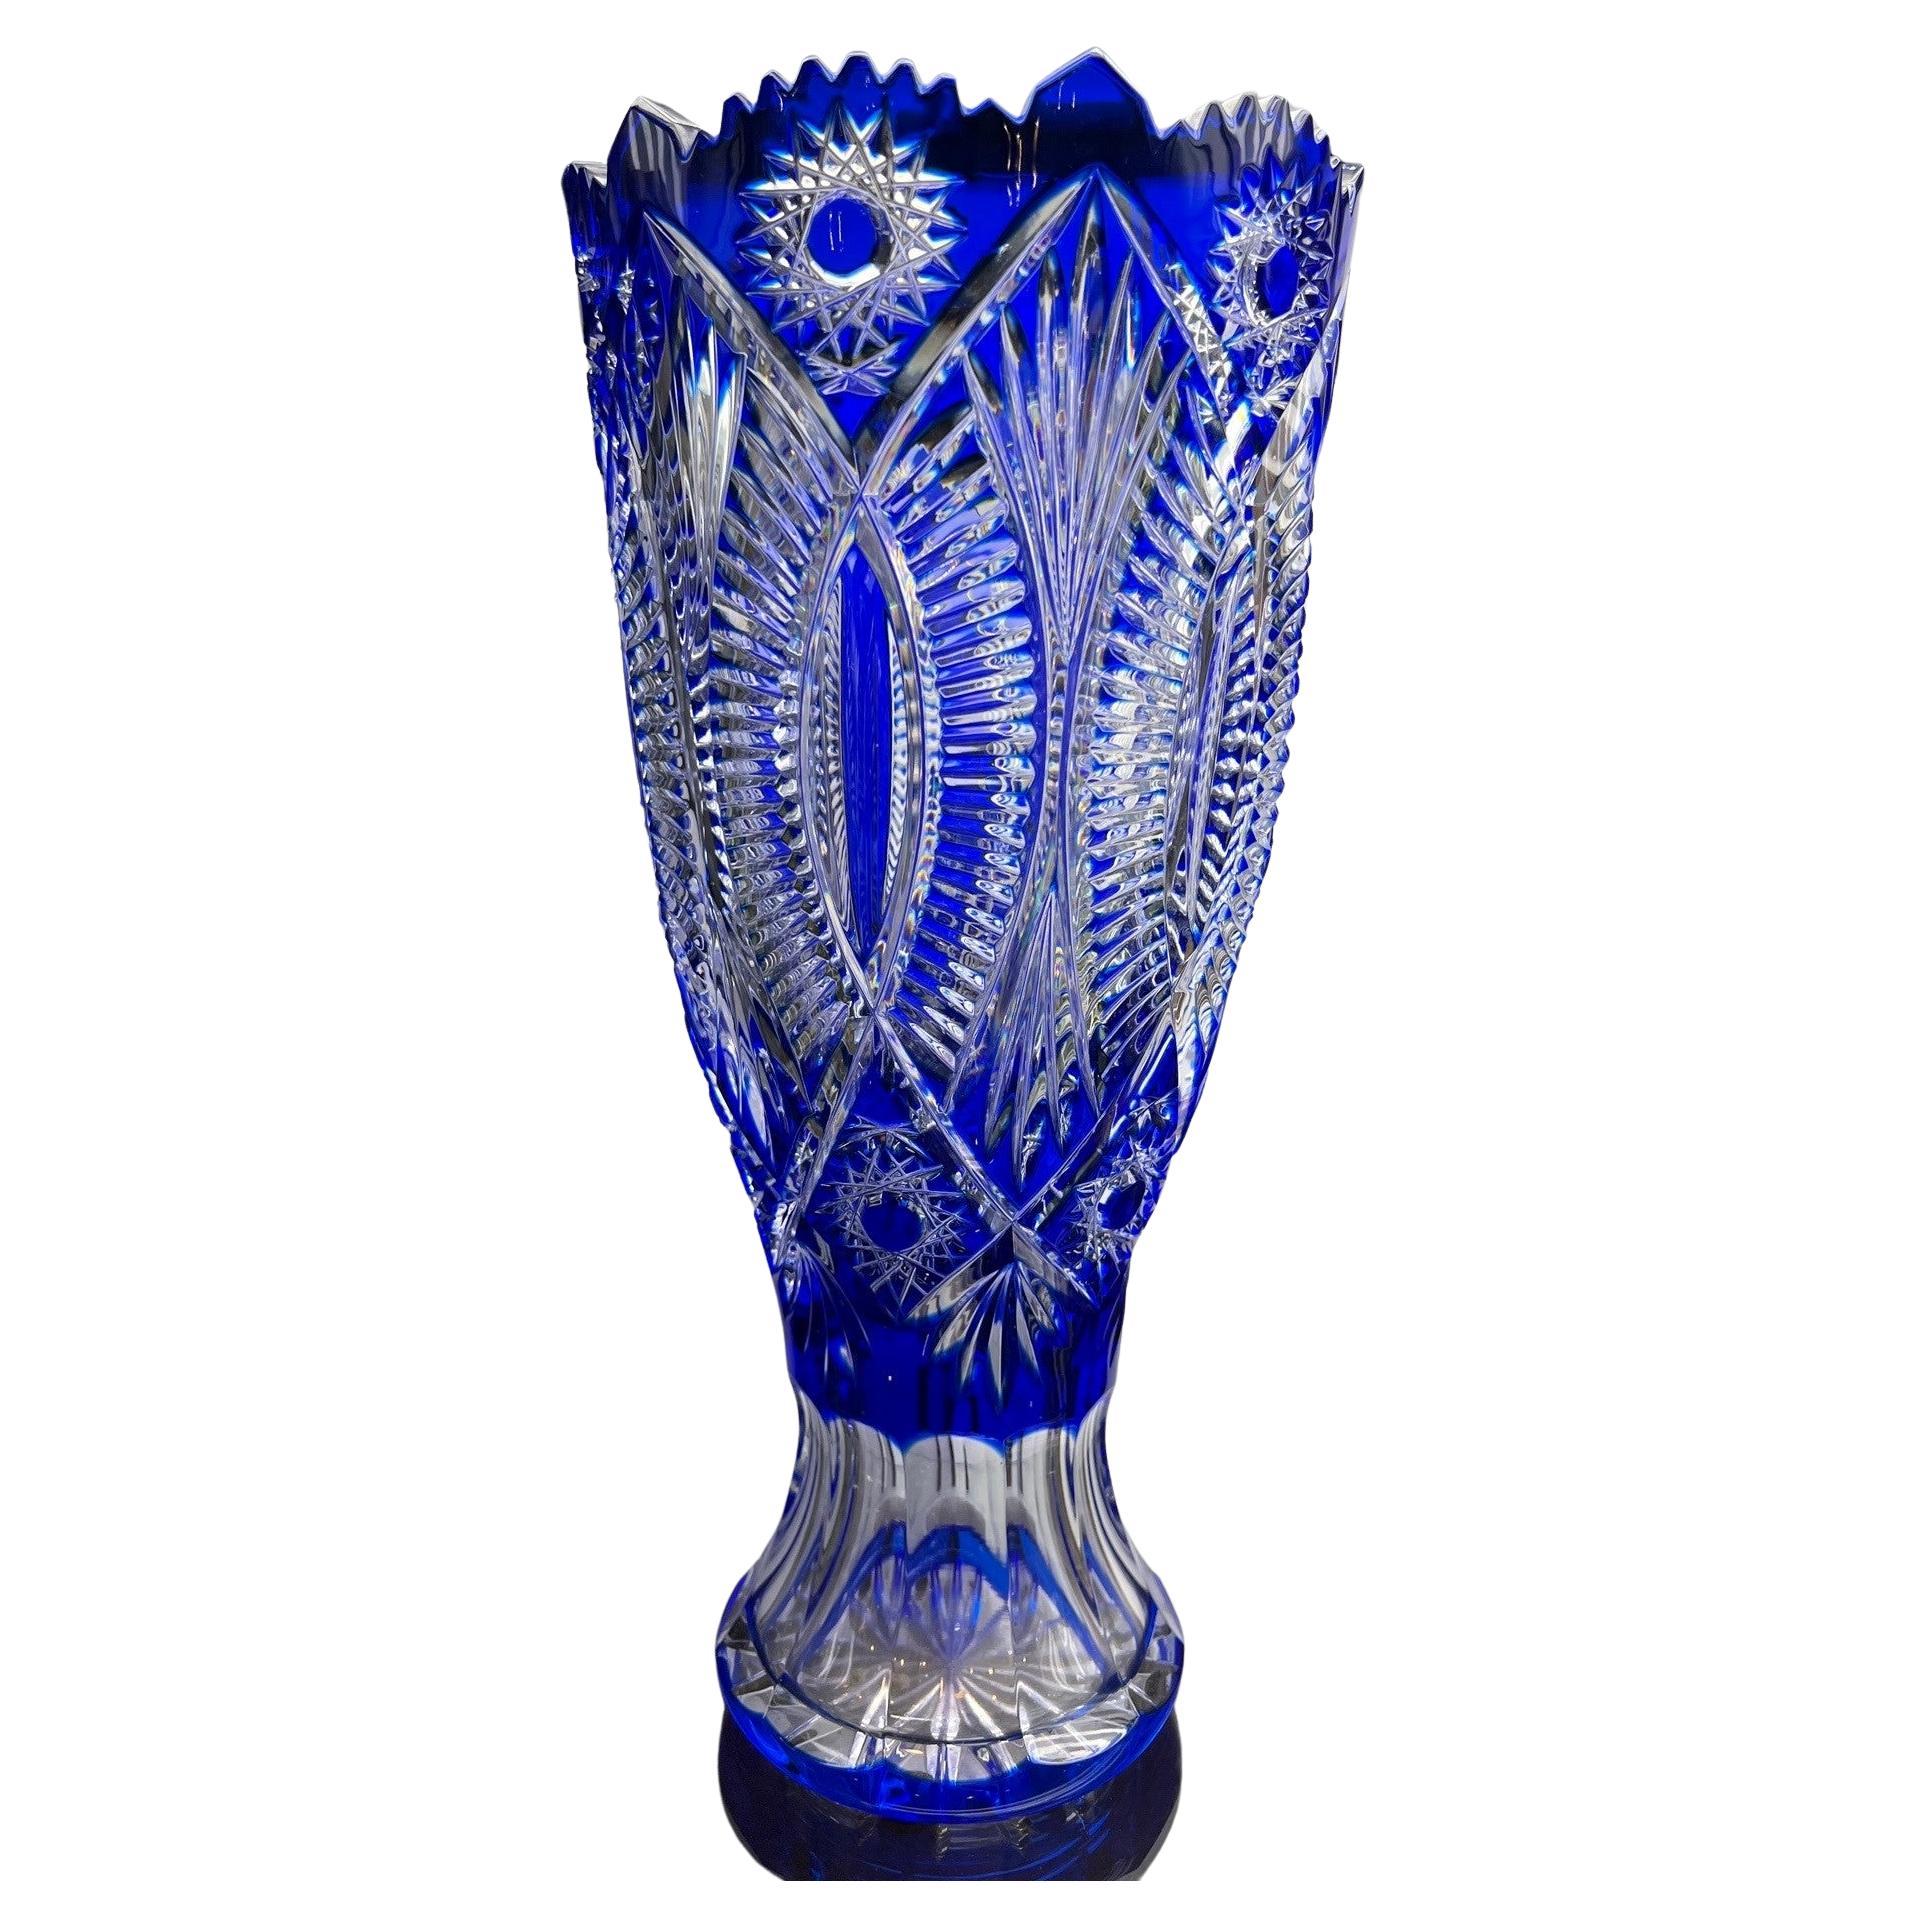  Hand Cut Lead Crystal Cobalt Blue Vase by Caesar Crystal Bohemiae Co. Czech.   For Sale